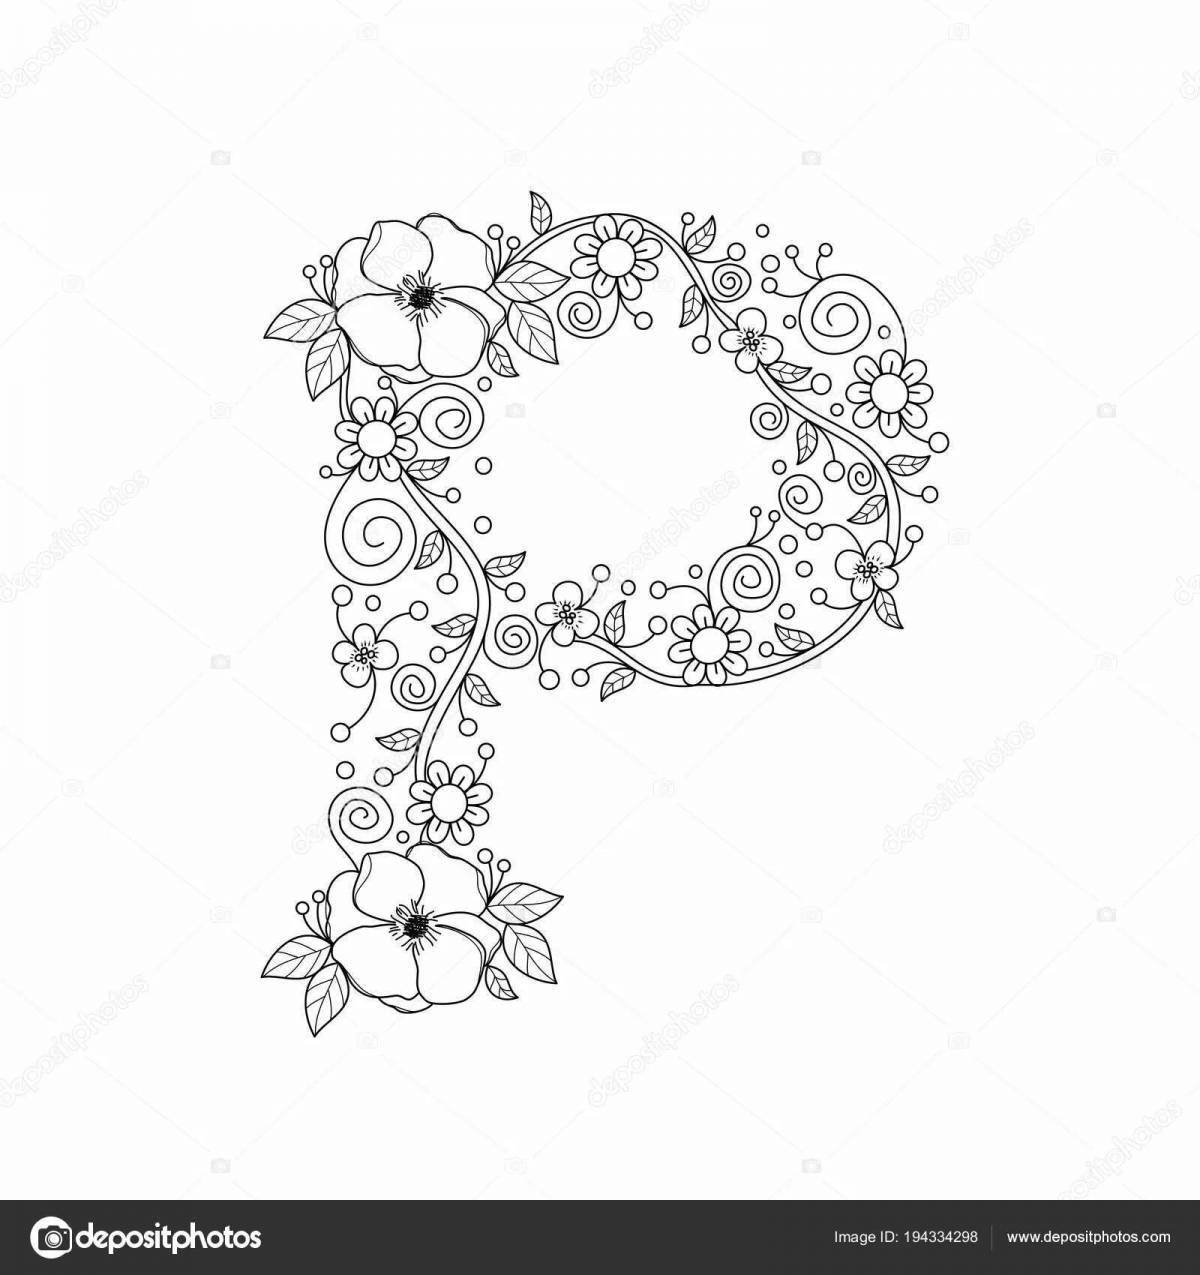 Экзотическая буква c с цветами